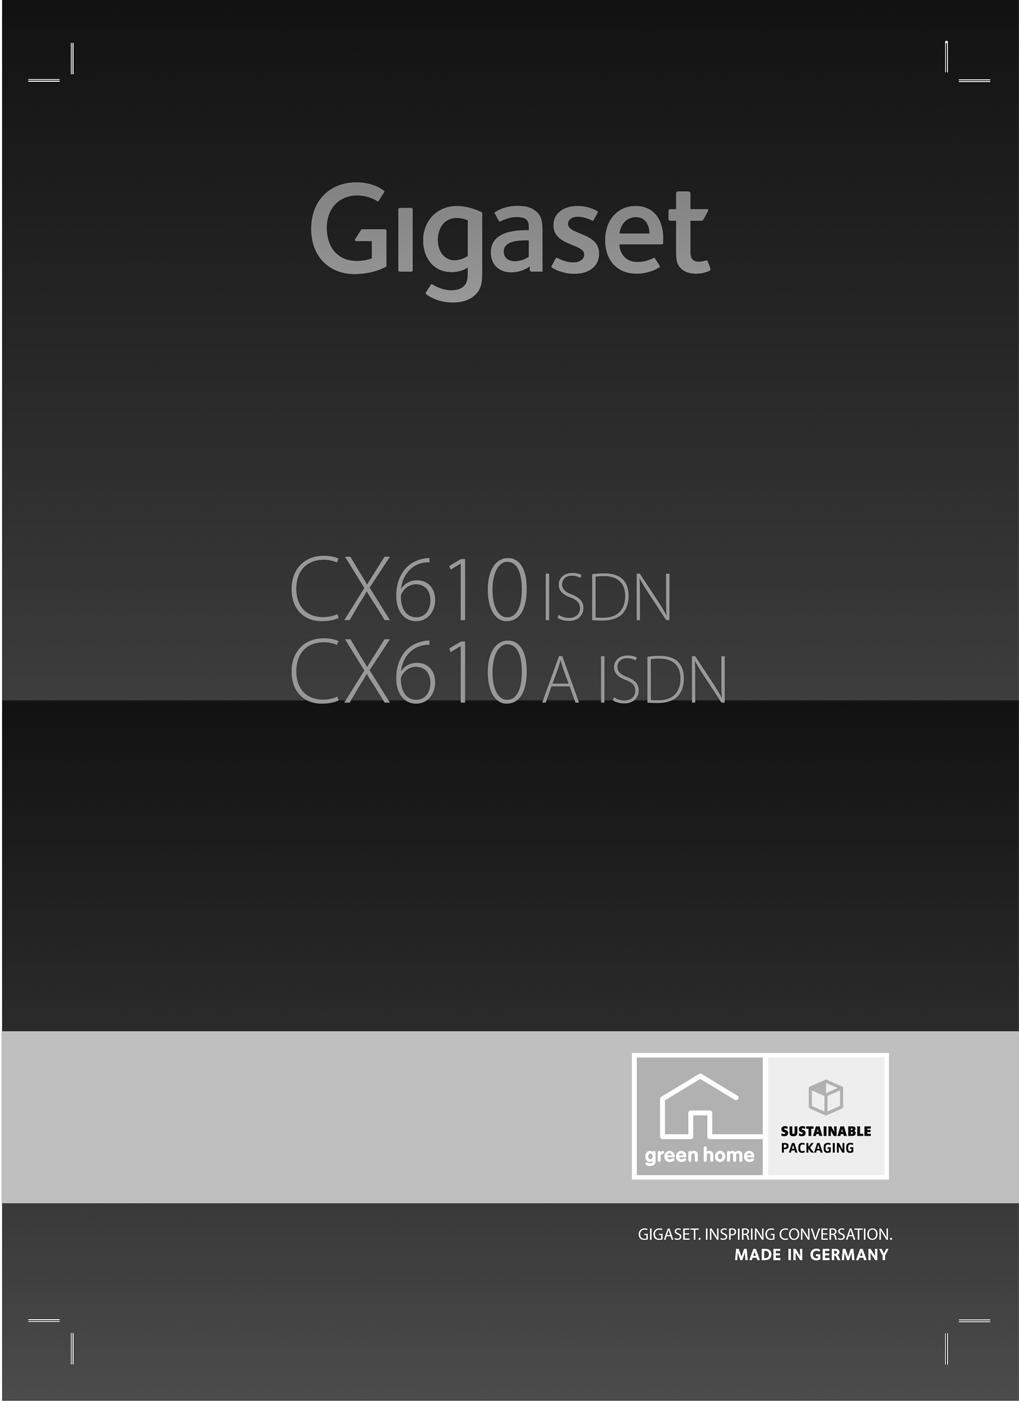 Congratulazioni Acquistando un prodotto Gigaset avete scelto un marchio estremamente sensibile ed attento alle tematiche della